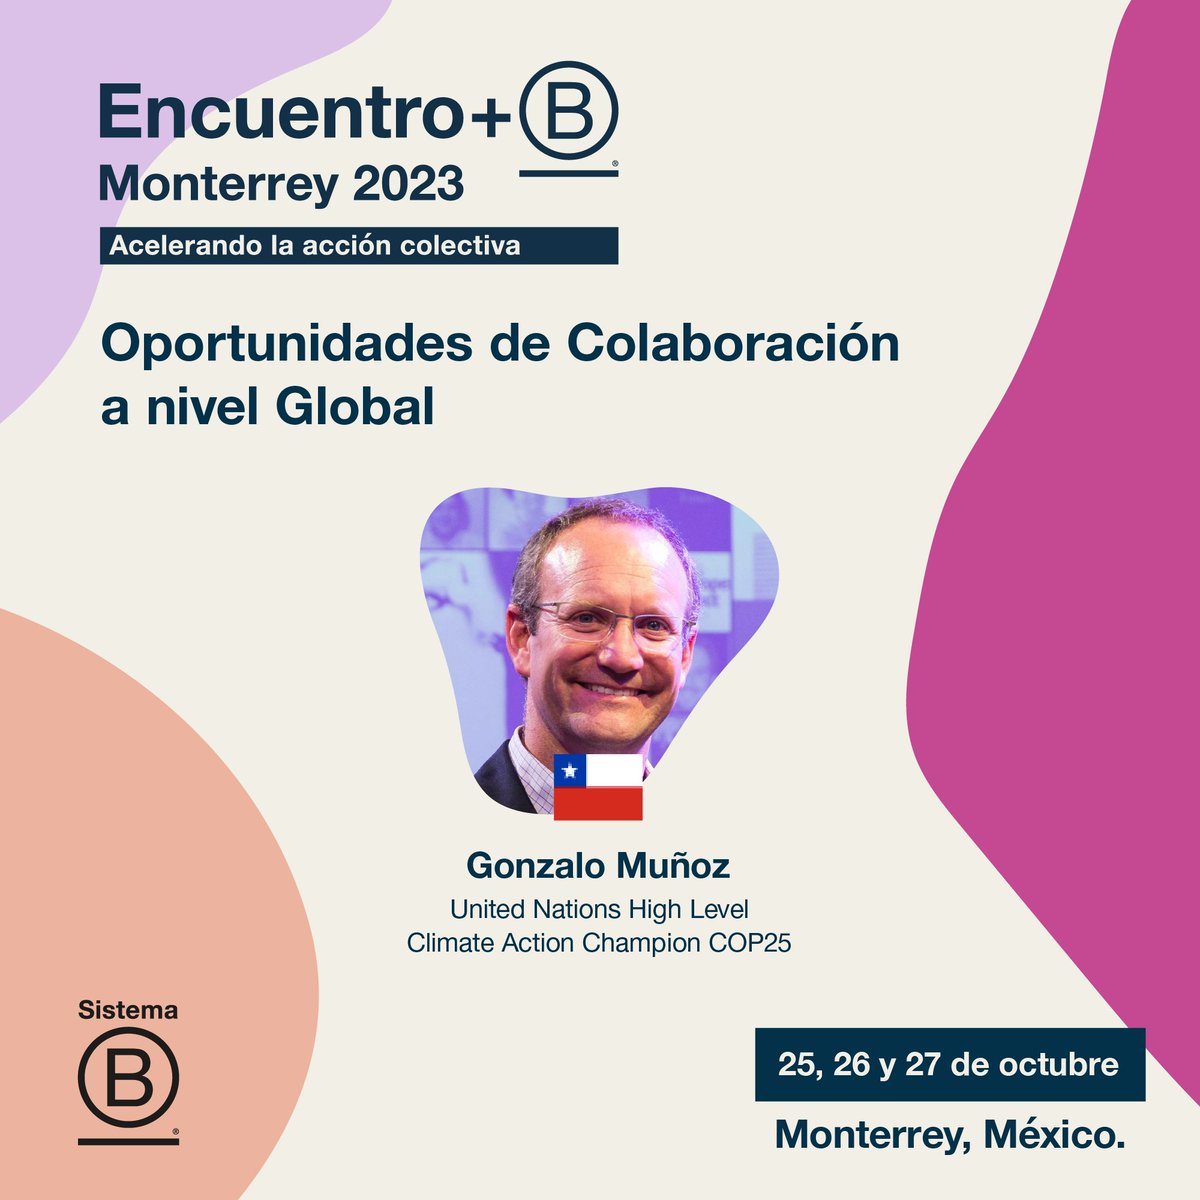 ¡Seguimos con las charlas del Encuentro+B Monterrey 2023! ¿Quieres saber qué te espera el día 1? ¡Desliza aquí y conoce algunas de nuestras charlas! Descubre más en encuentrob.com. #EncuentroB #EmpresasB #SistemaB